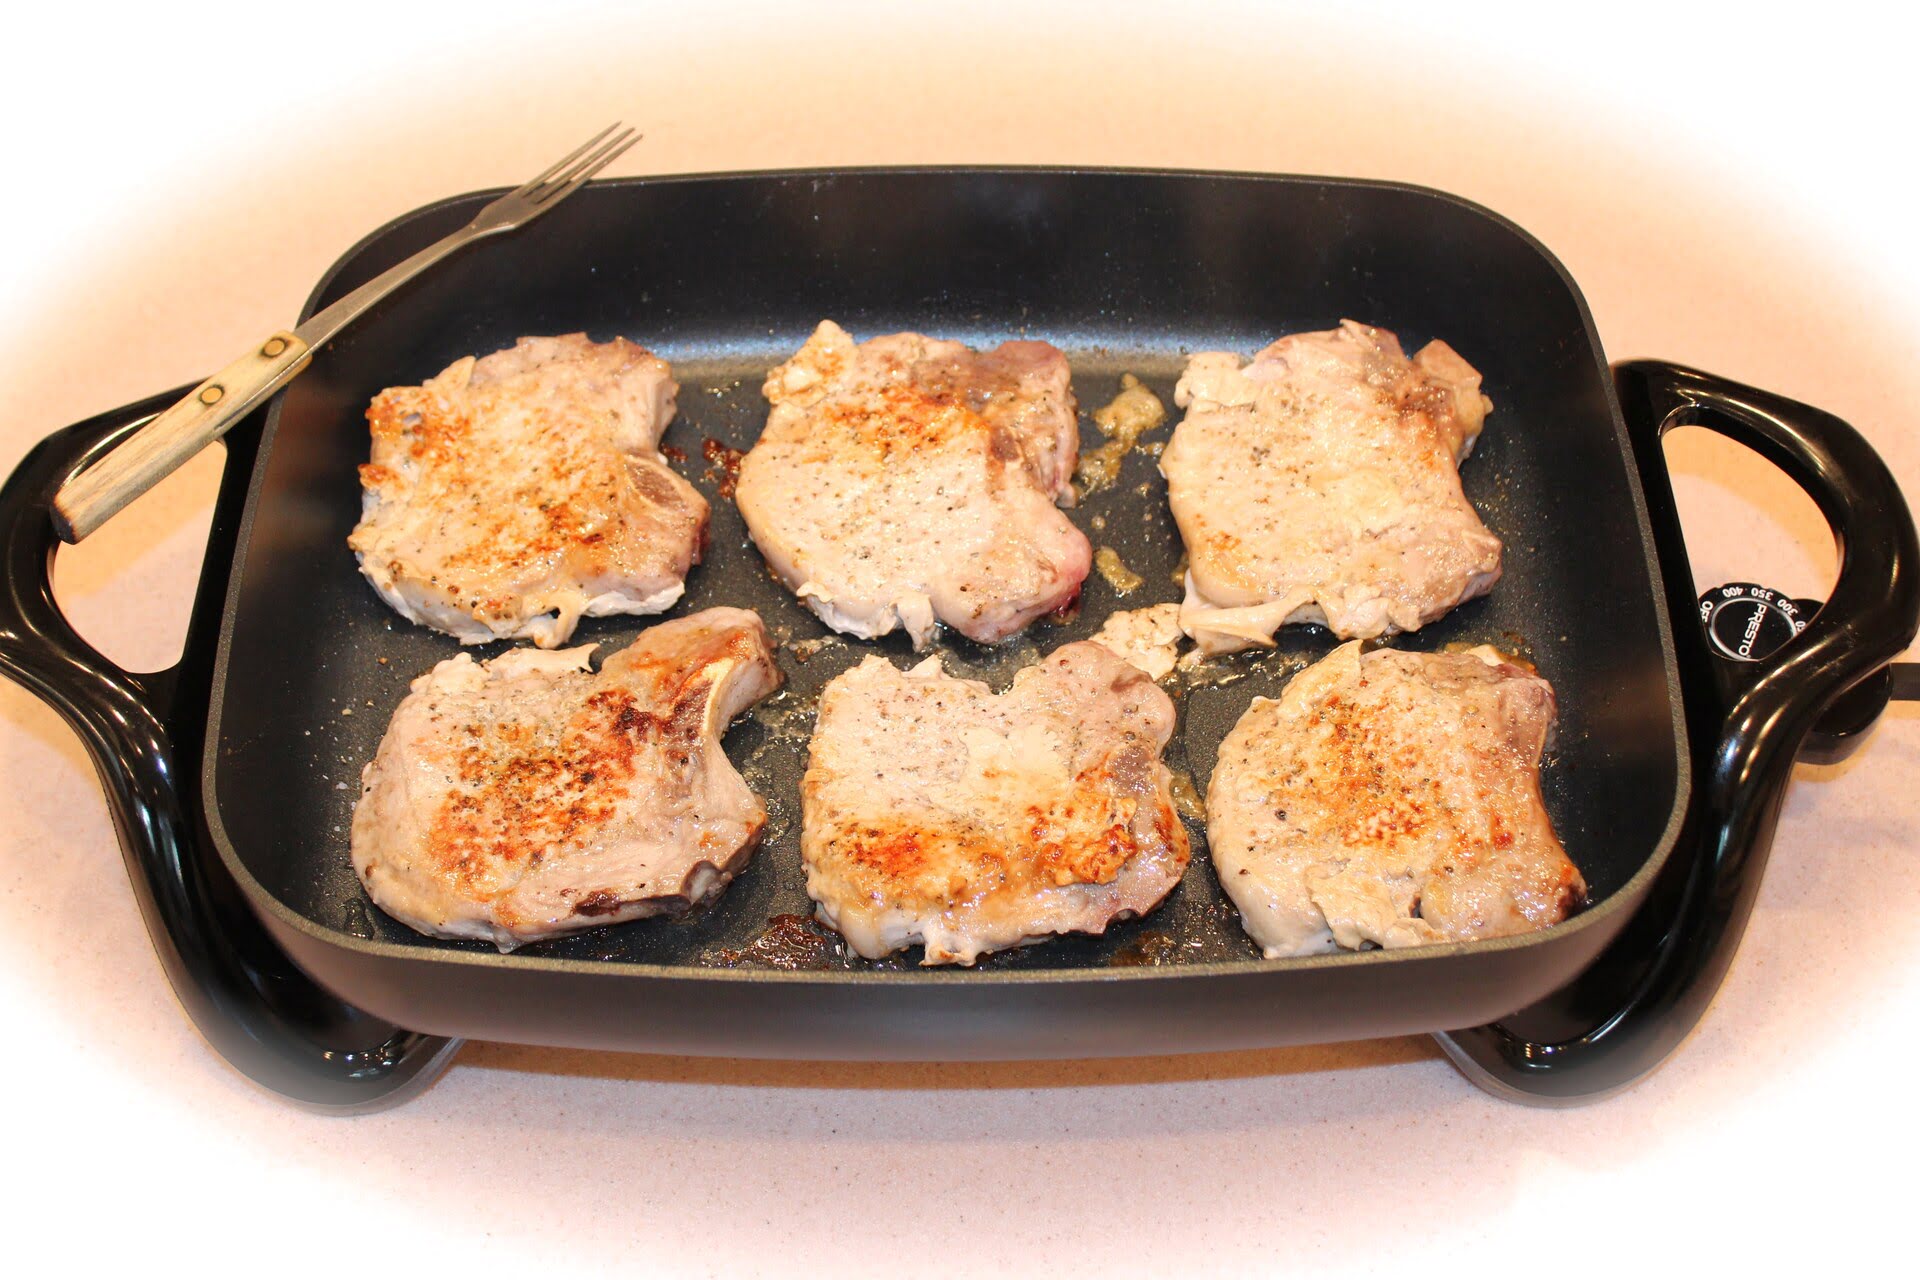 Pan Fried Pork Chops (Tender & Juicy!) - The Endless Meal®